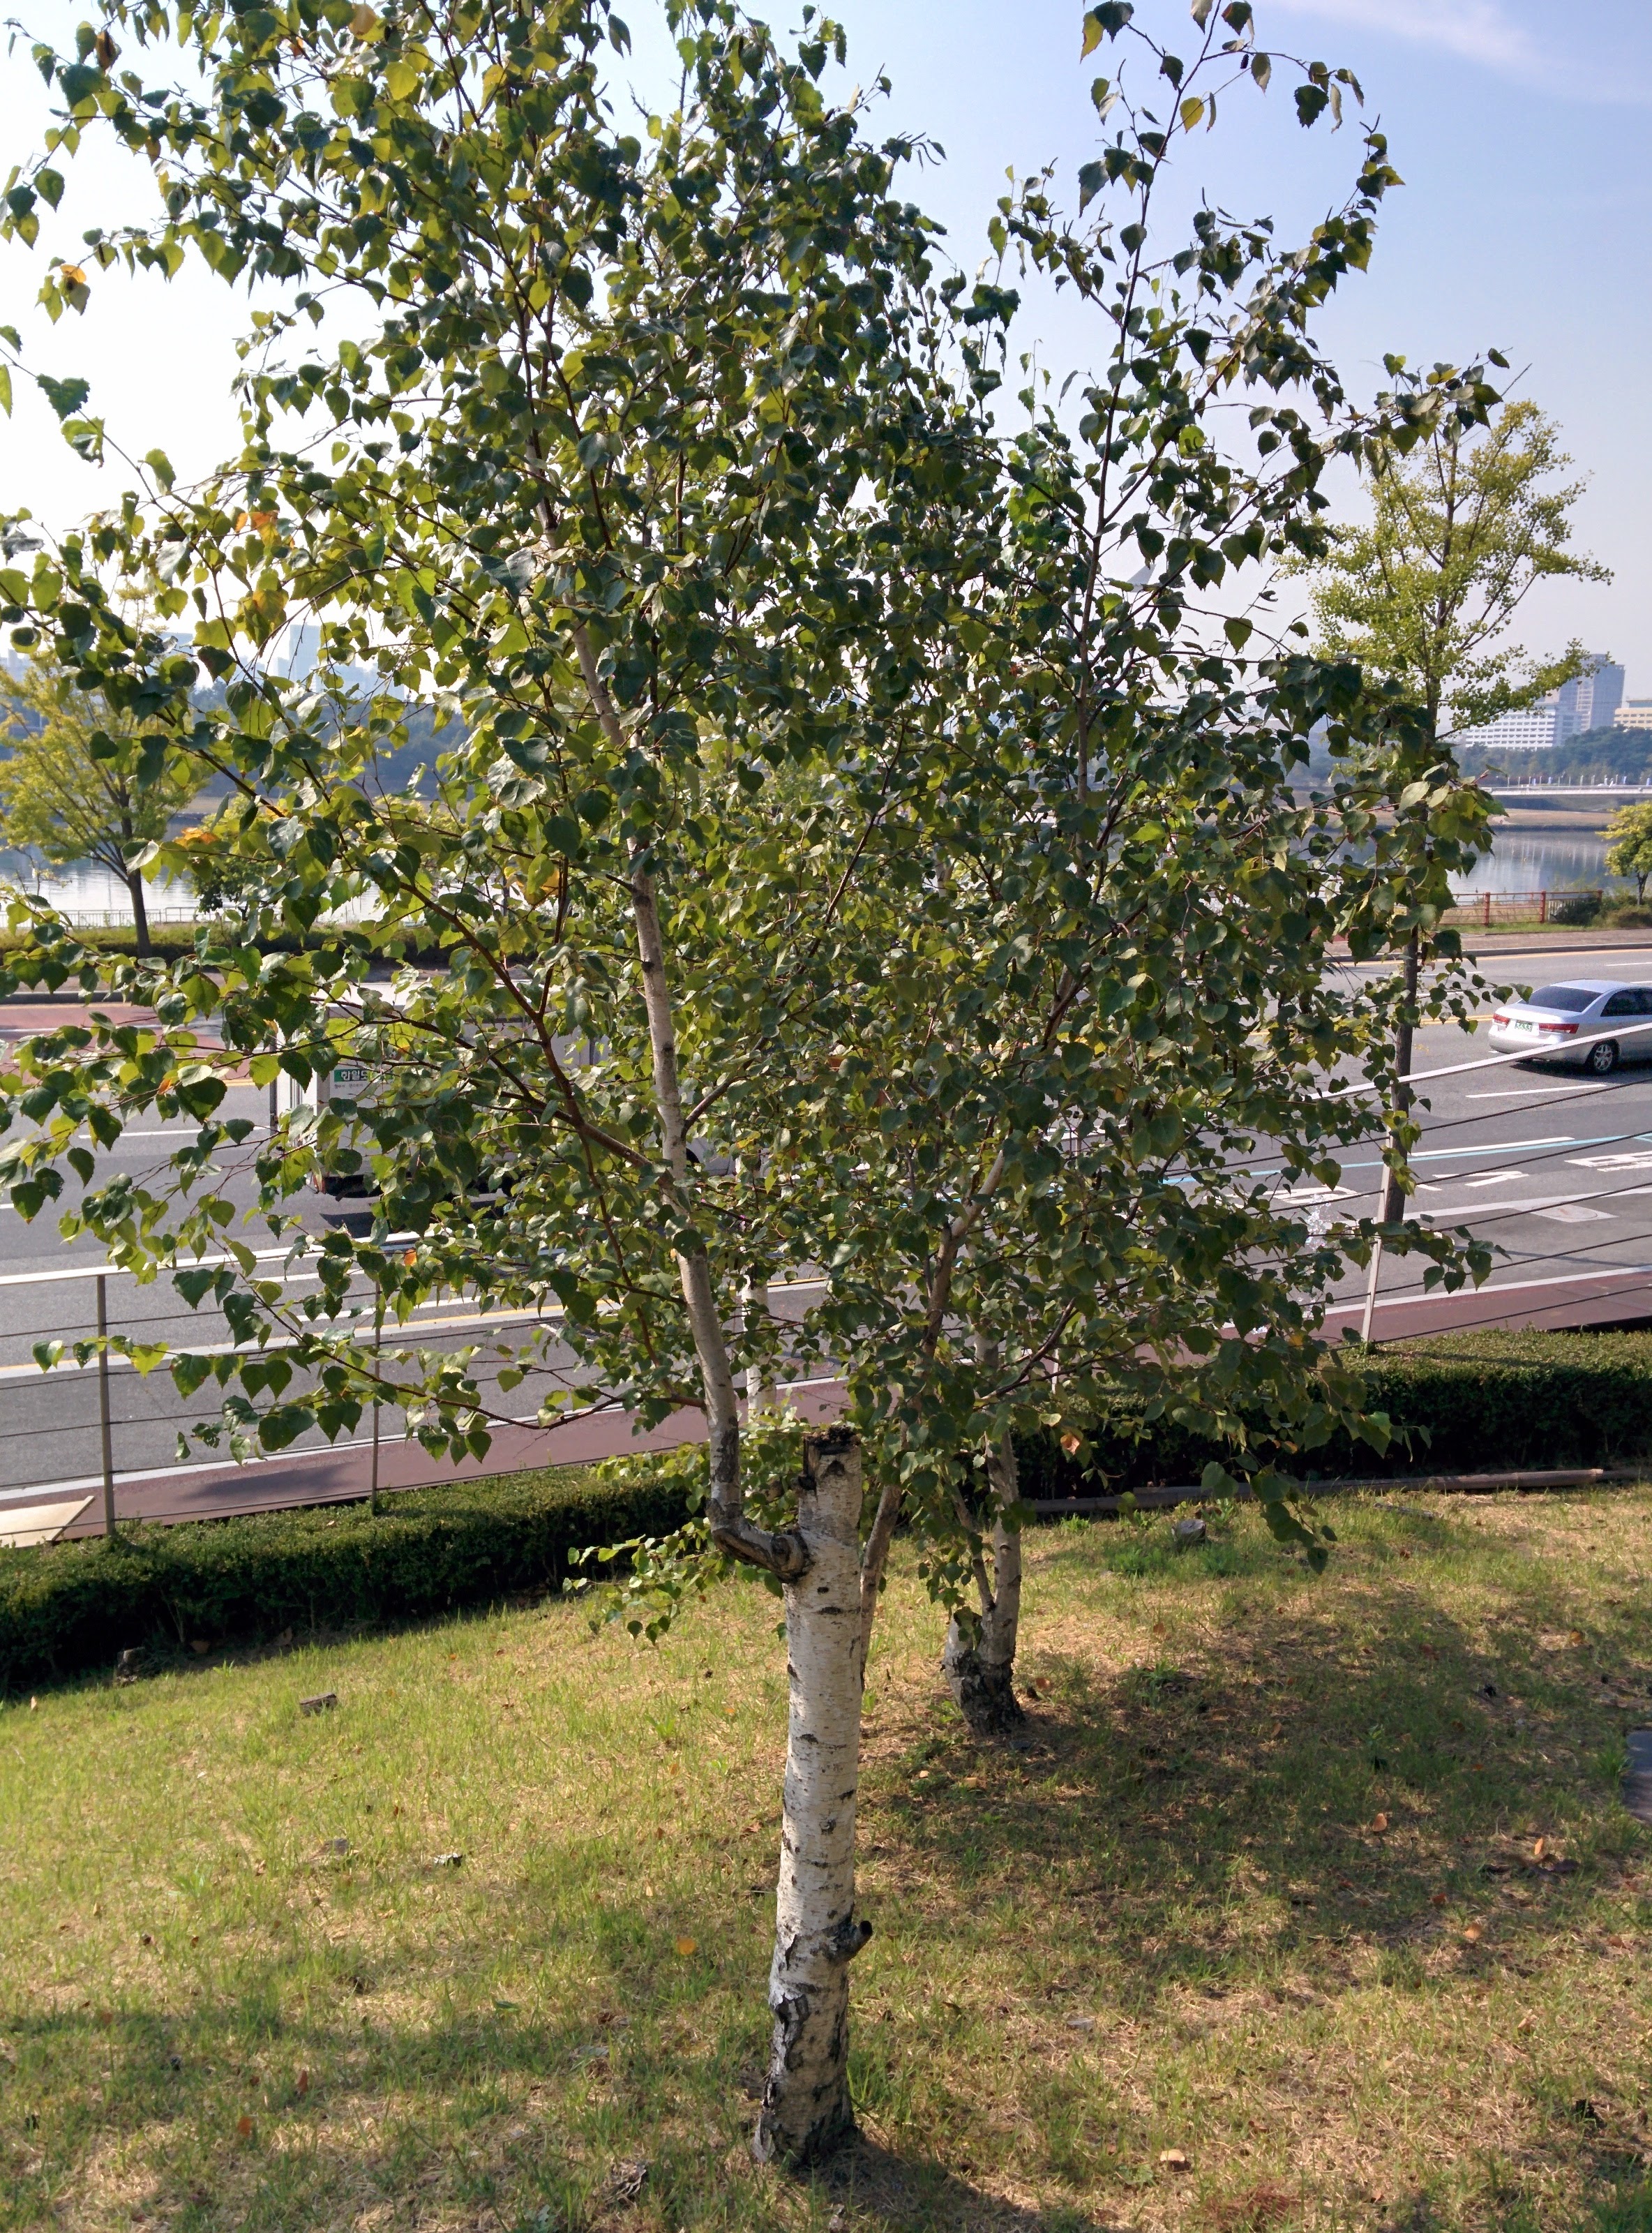 IMG_20151007_104816.jpg 줄기가 흰색인 자작나무 열매와 줄기